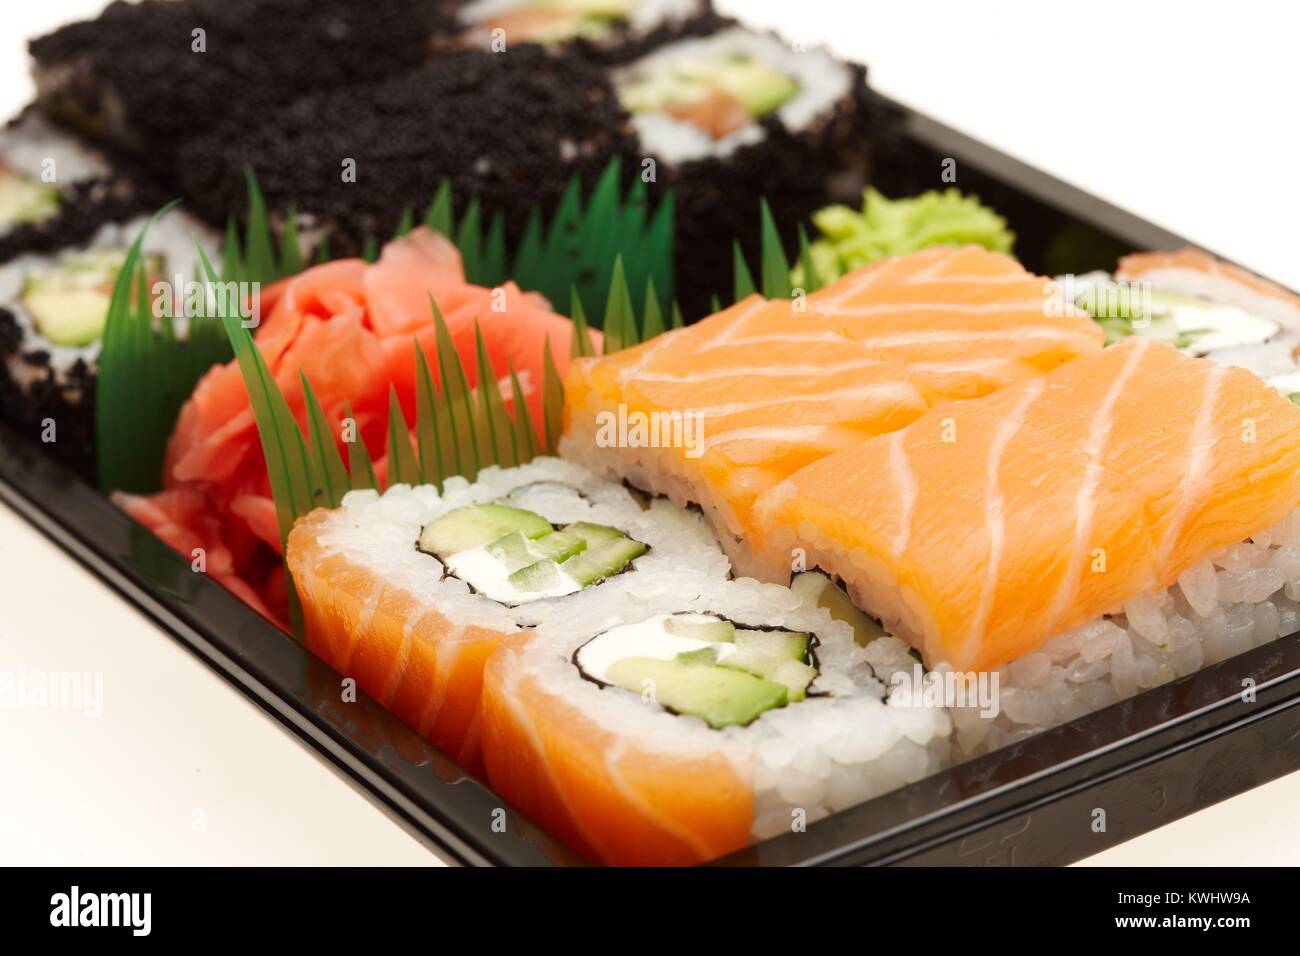 Japanese sushi rolls. Stock Photo